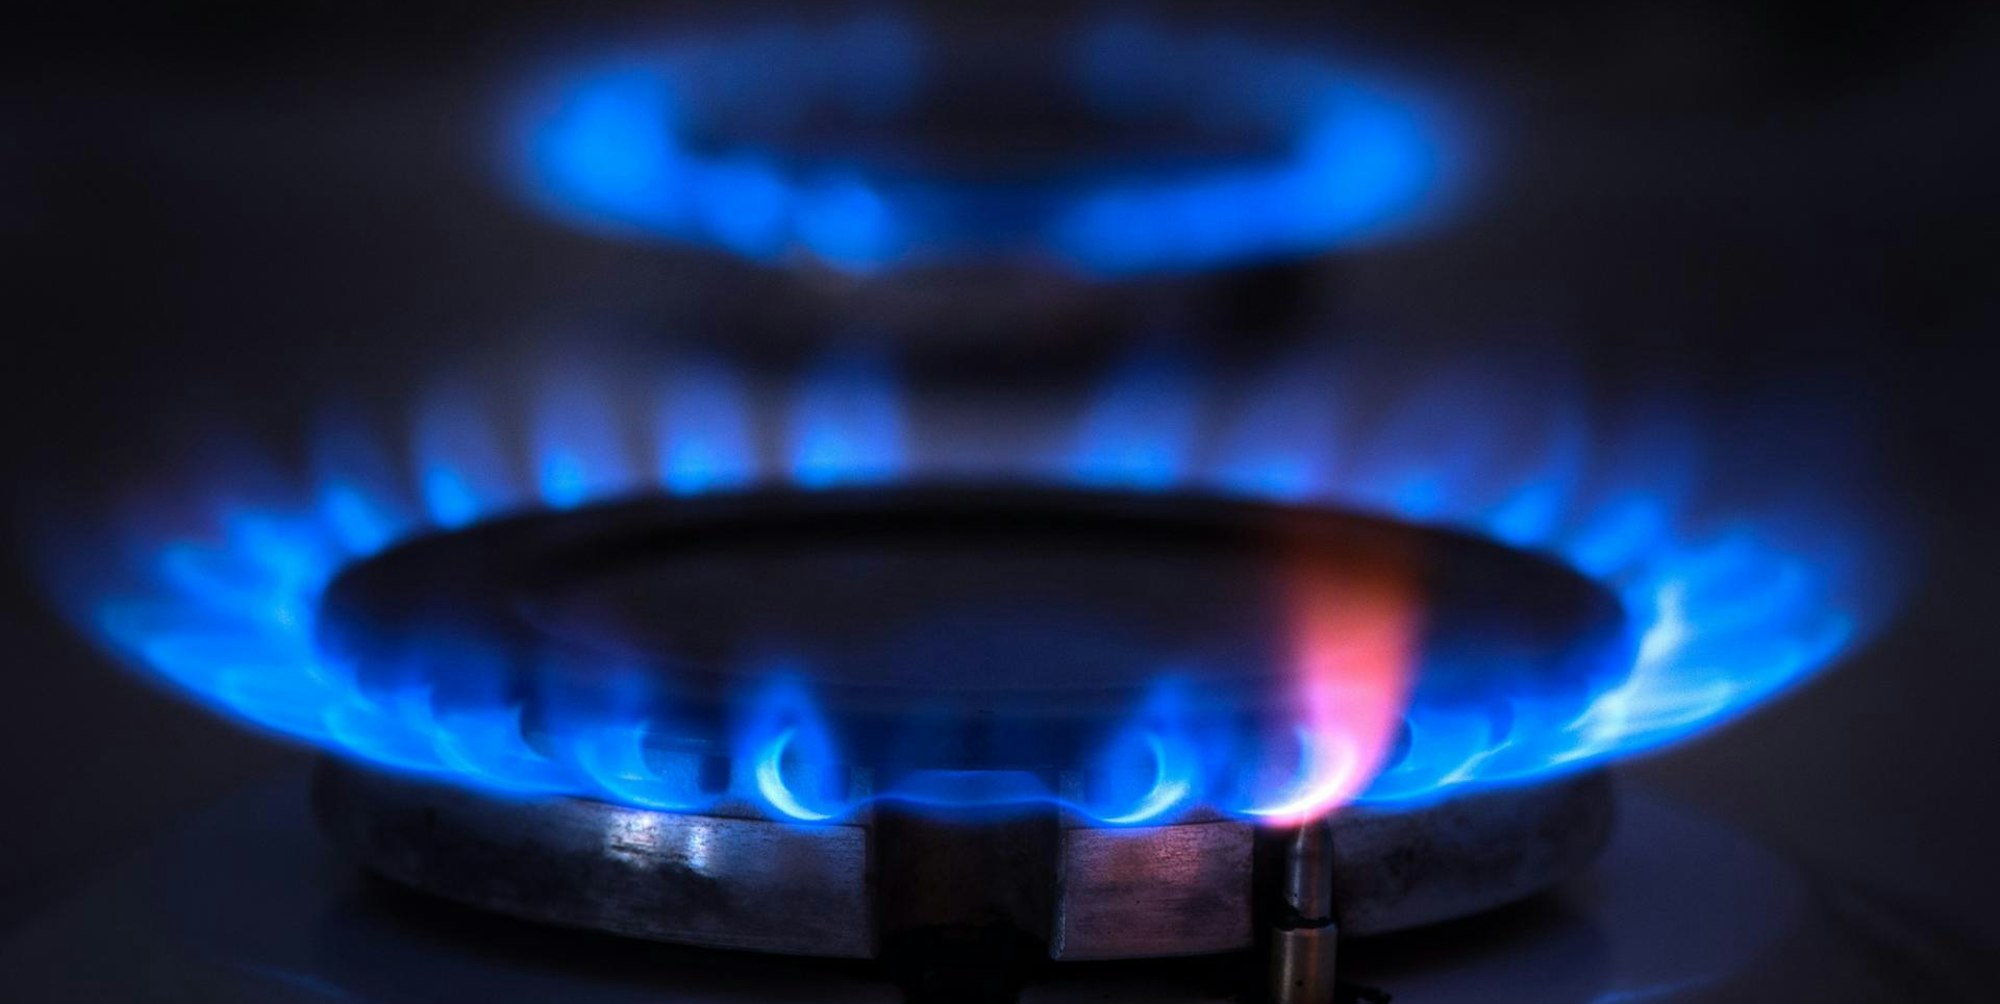 Die Preise für Gas sind deutlich gestiegen, die Energieversorgen erhöhen die Abschläge.